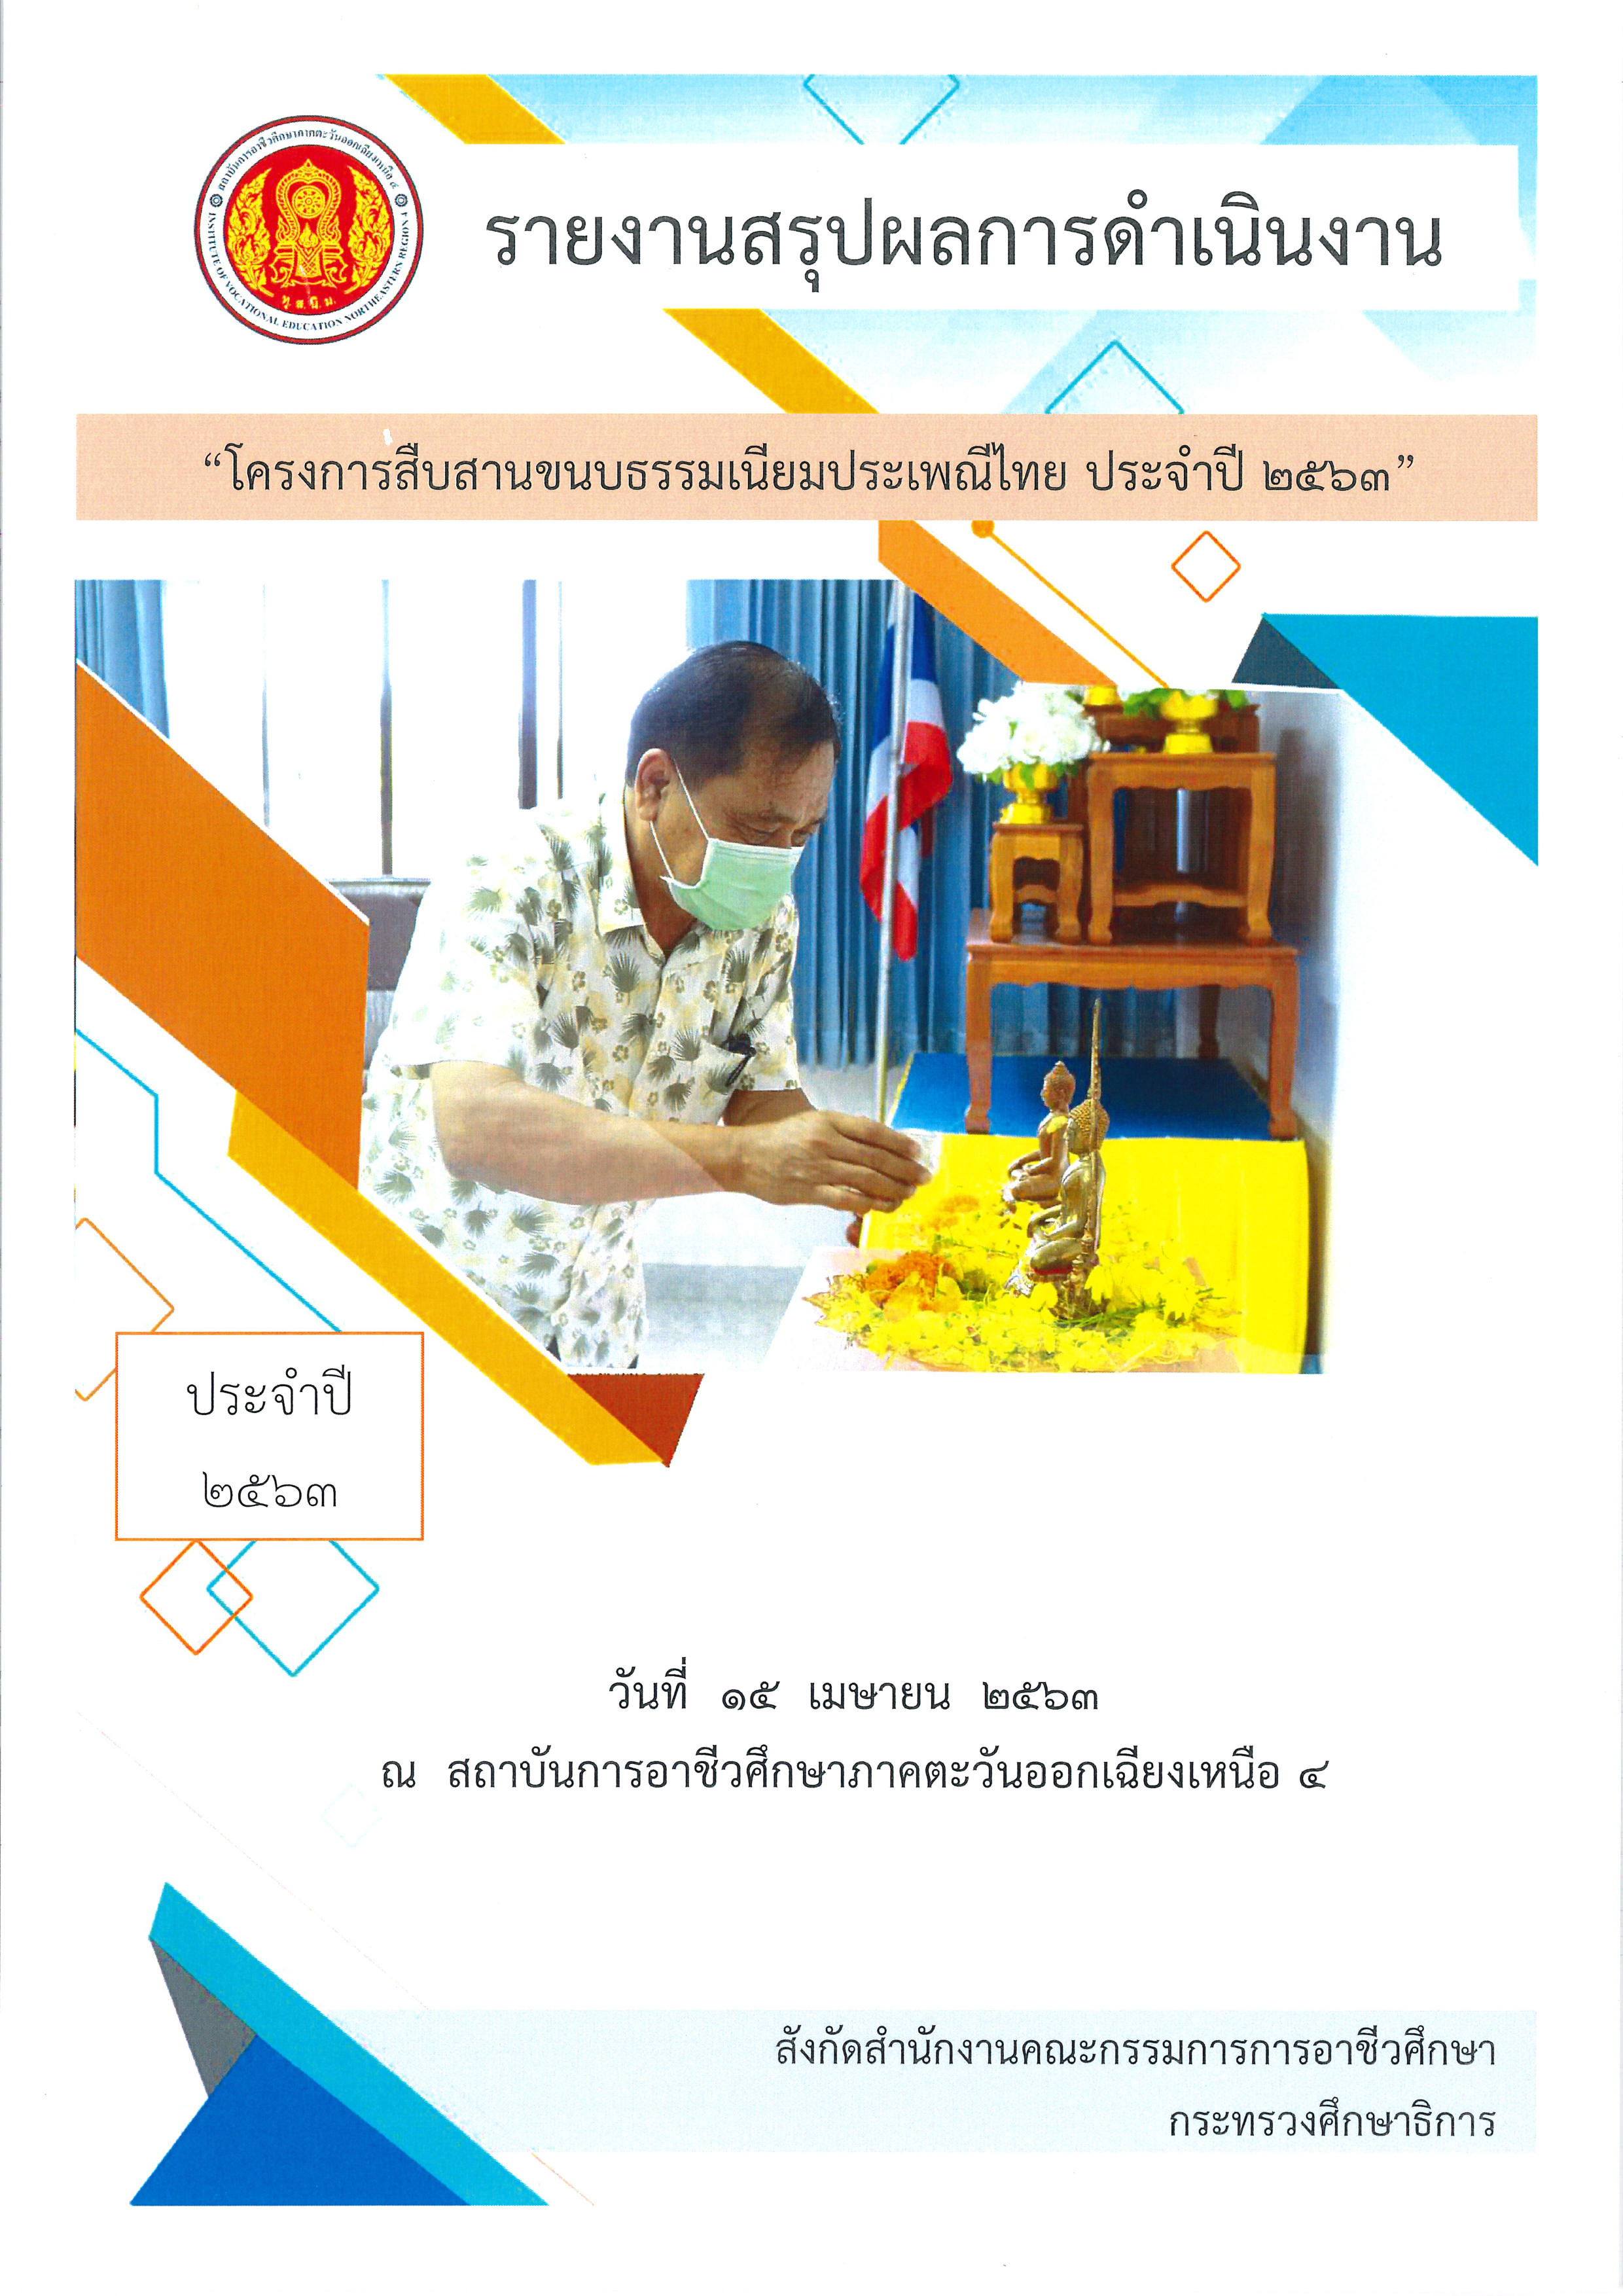 2.Thai traditions (Songkran Festival 63) 1